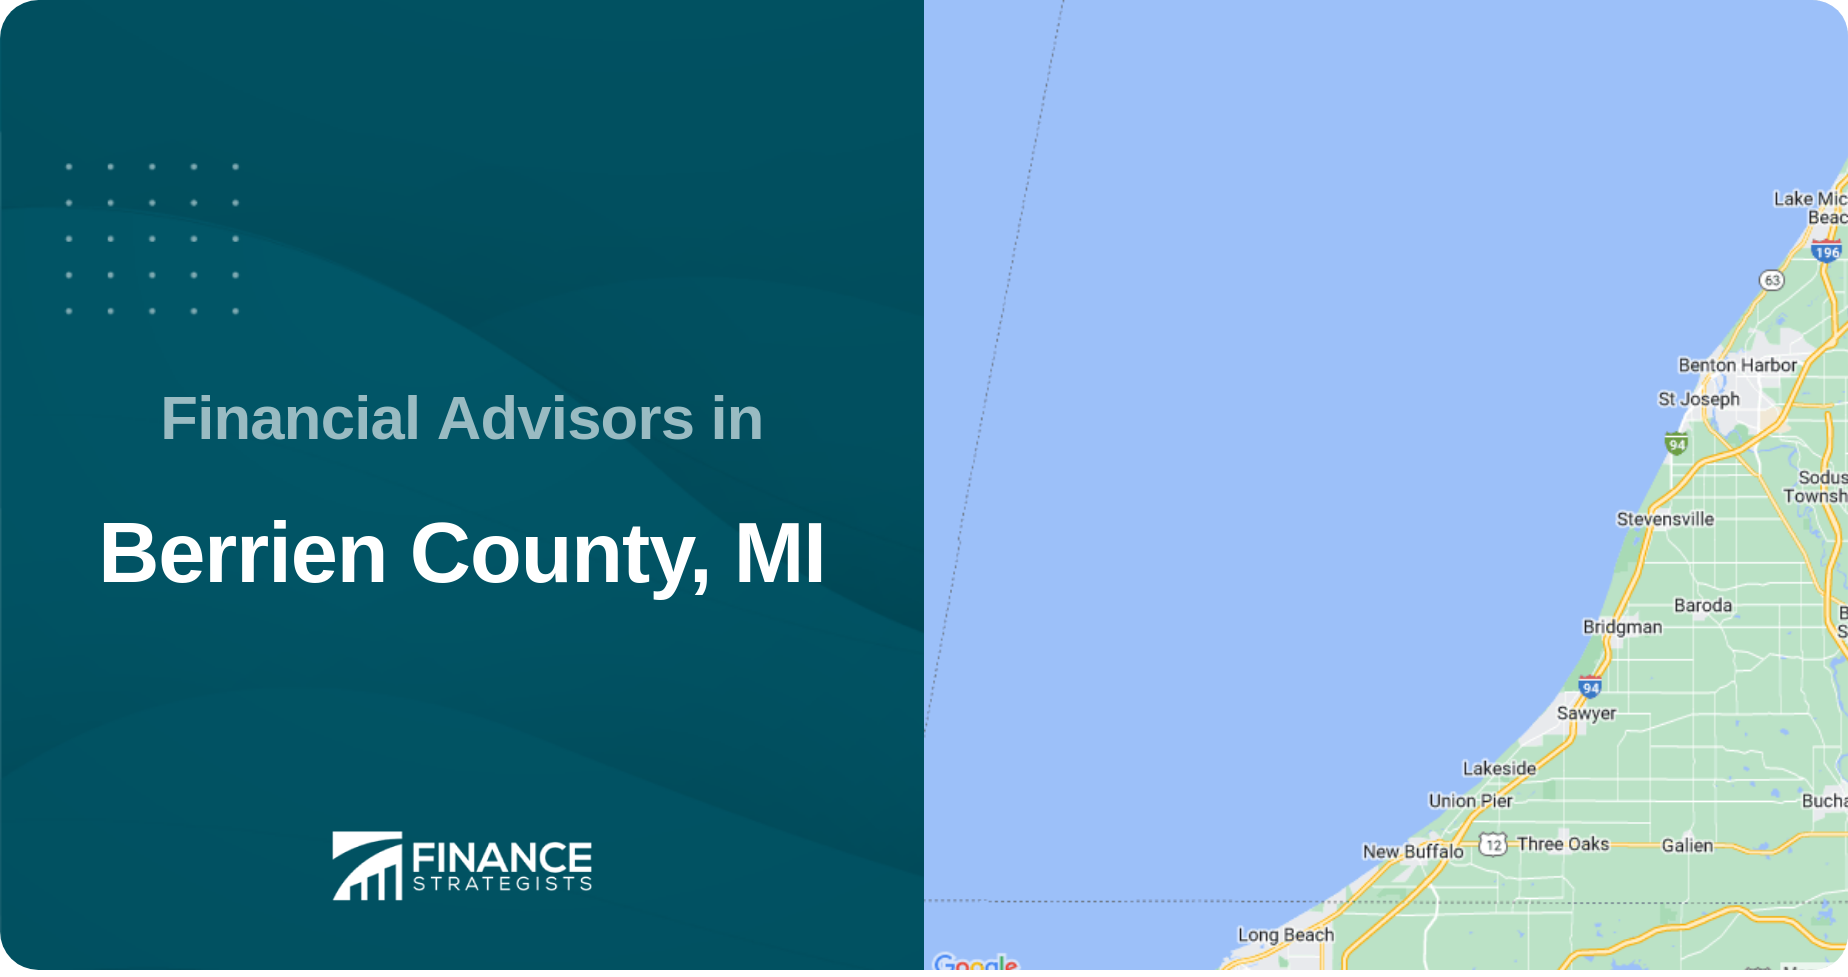 Financial Advisors in Berrien County, MI